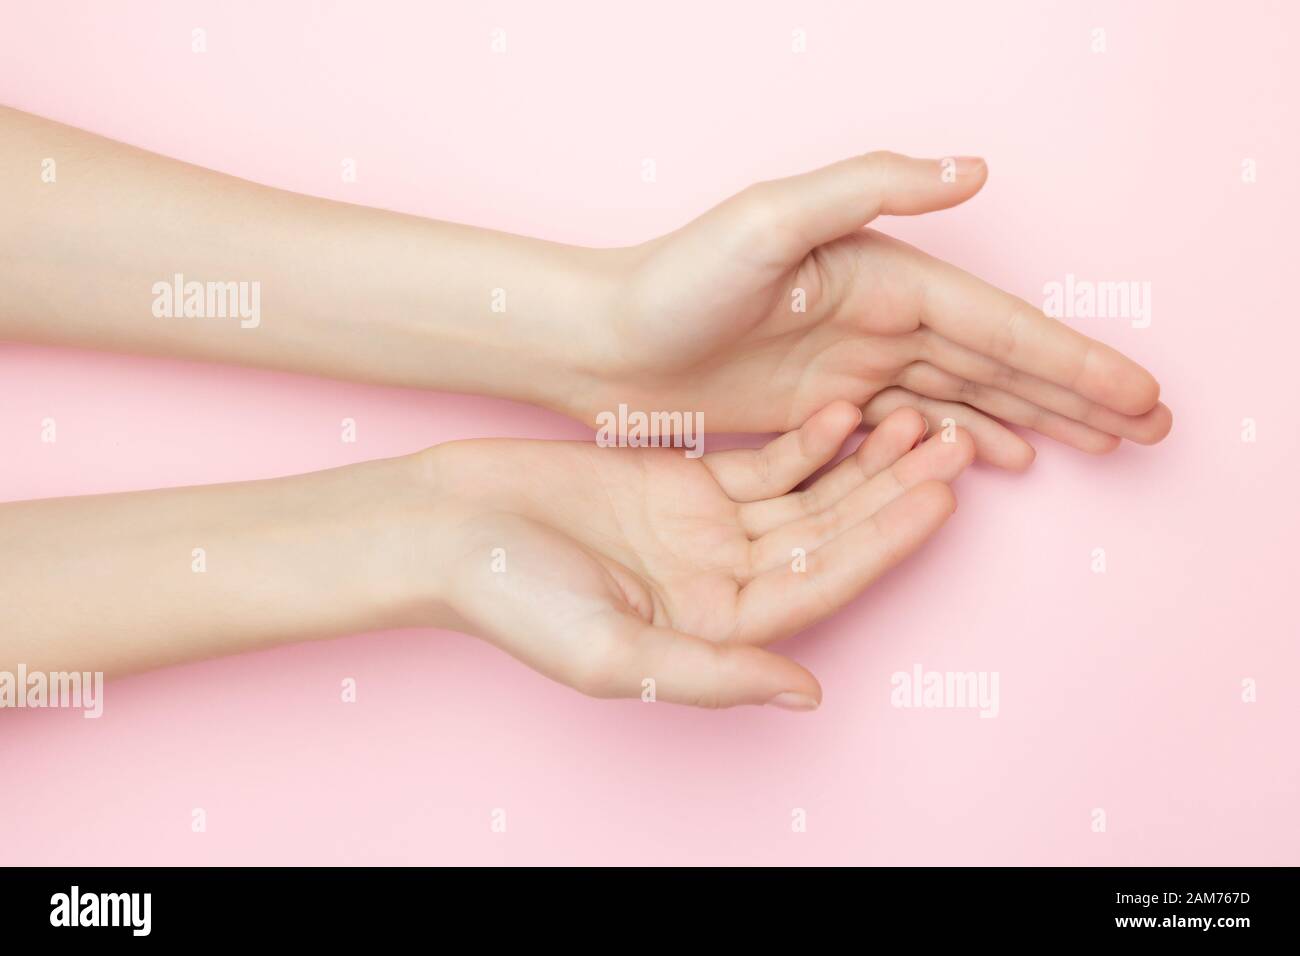 La femme mains sur un fond rose. Cosmétiques pour les soins de la peau  sensibles. Cosmétiques naturels pour pétales, soin anti-rides pour les mains.  Un poignet fin et naturel Photo Stock -